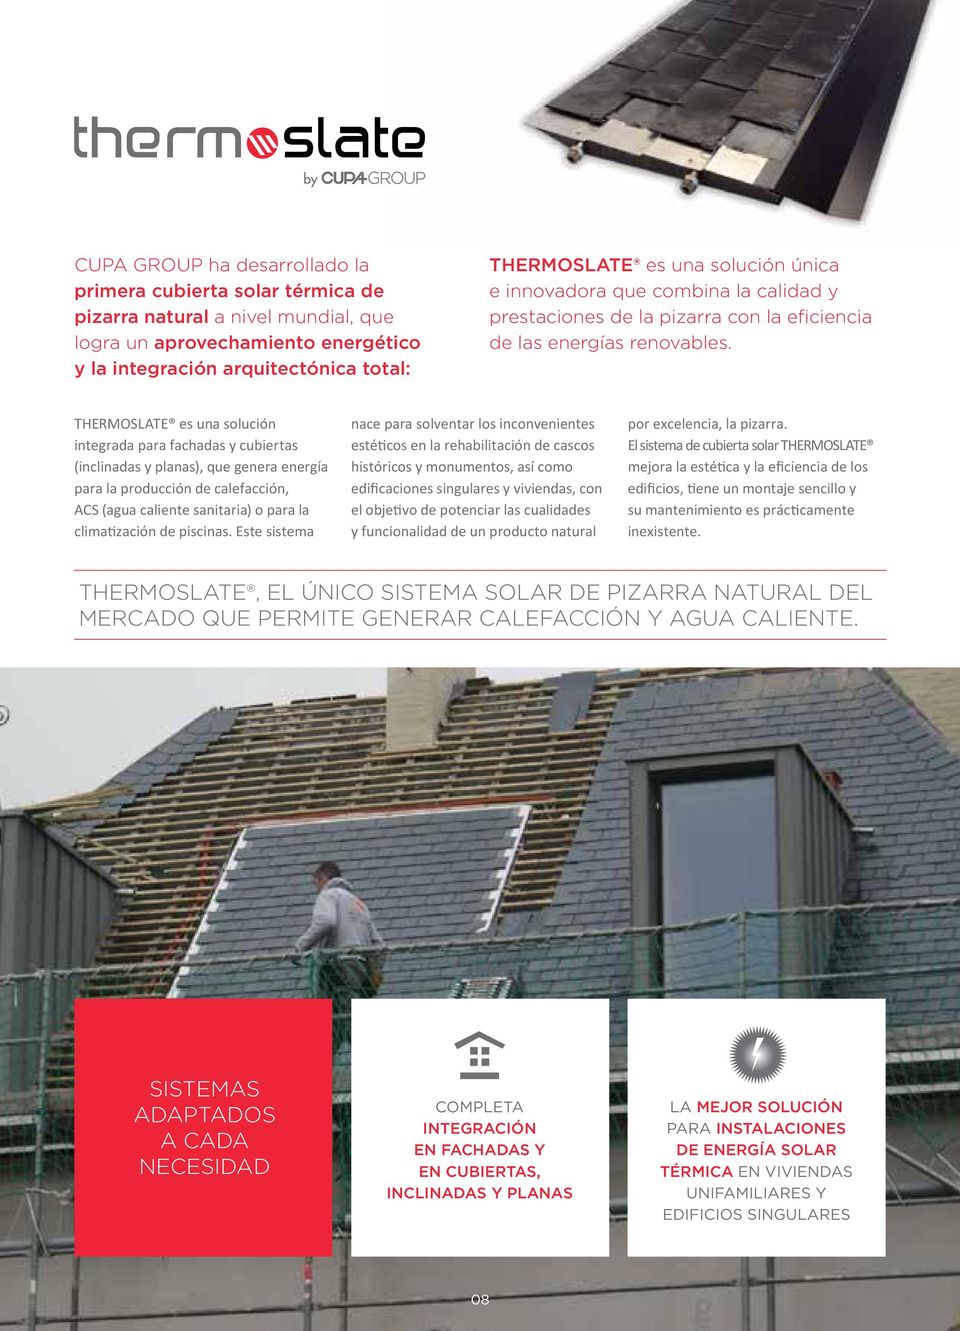 THERMOSLATE es una solución integrada para fachadas y cubiertas (inclinadas y planas), que genera energía para la producción de calefacción, ACS (agua caliente sanitaria) o para la climatización de